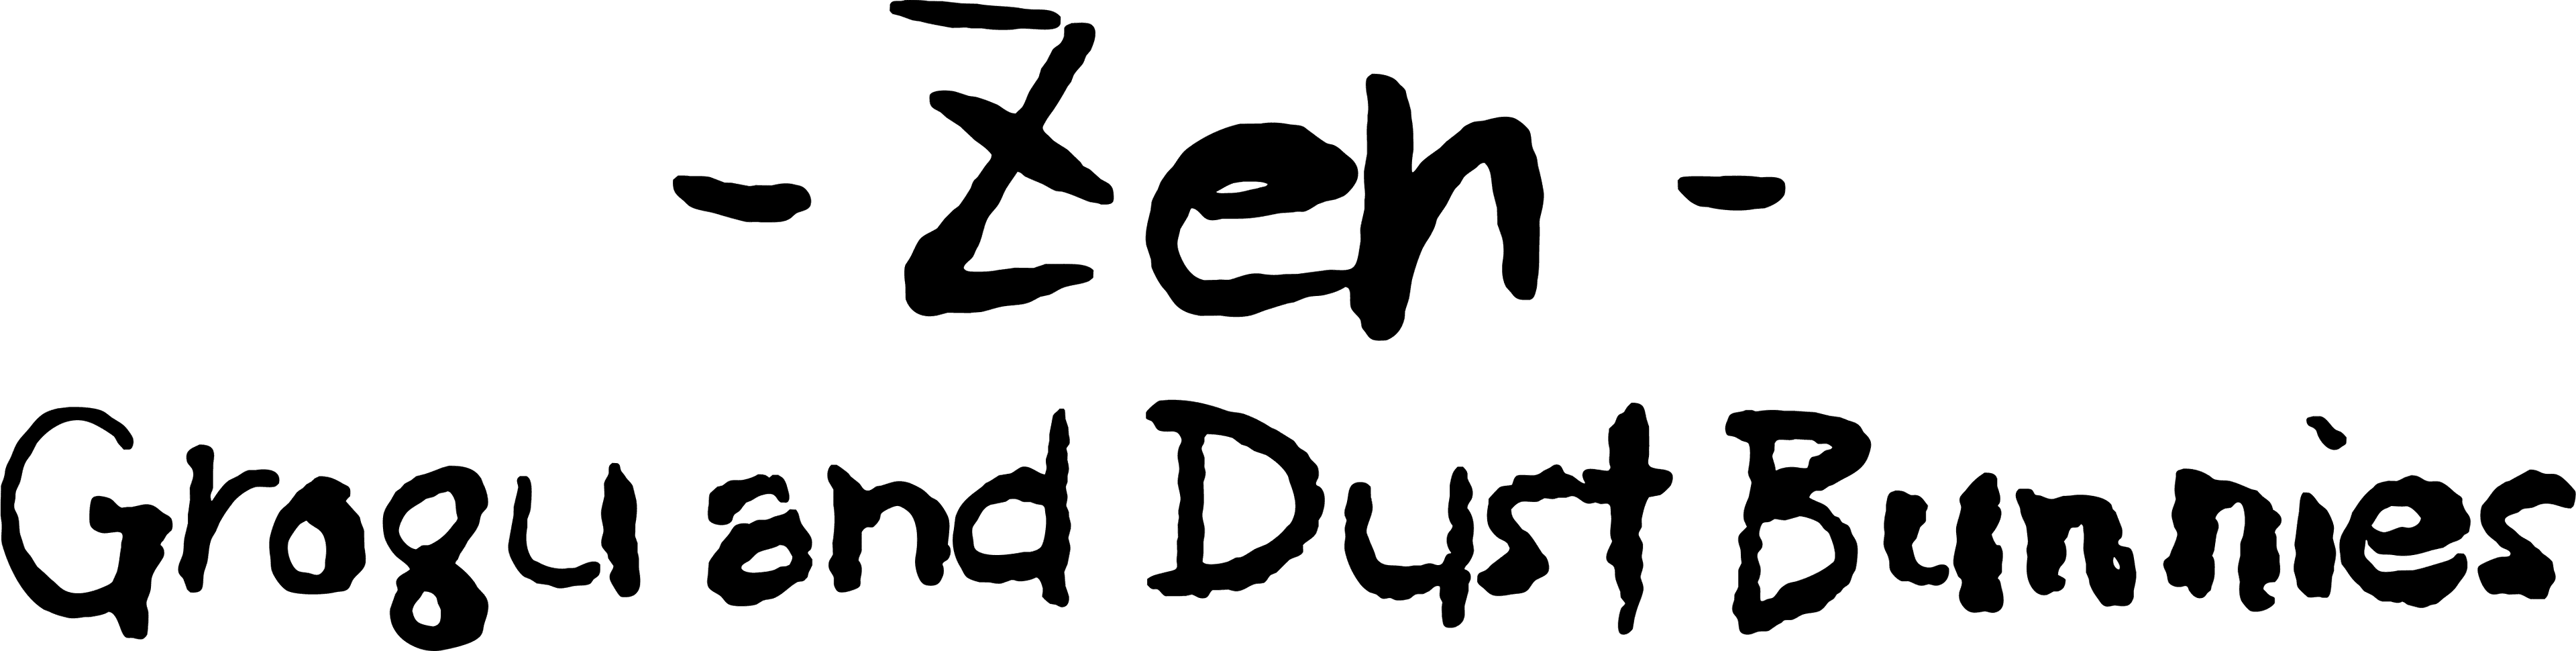 Zen - Grogu and Dust Bunnies logo